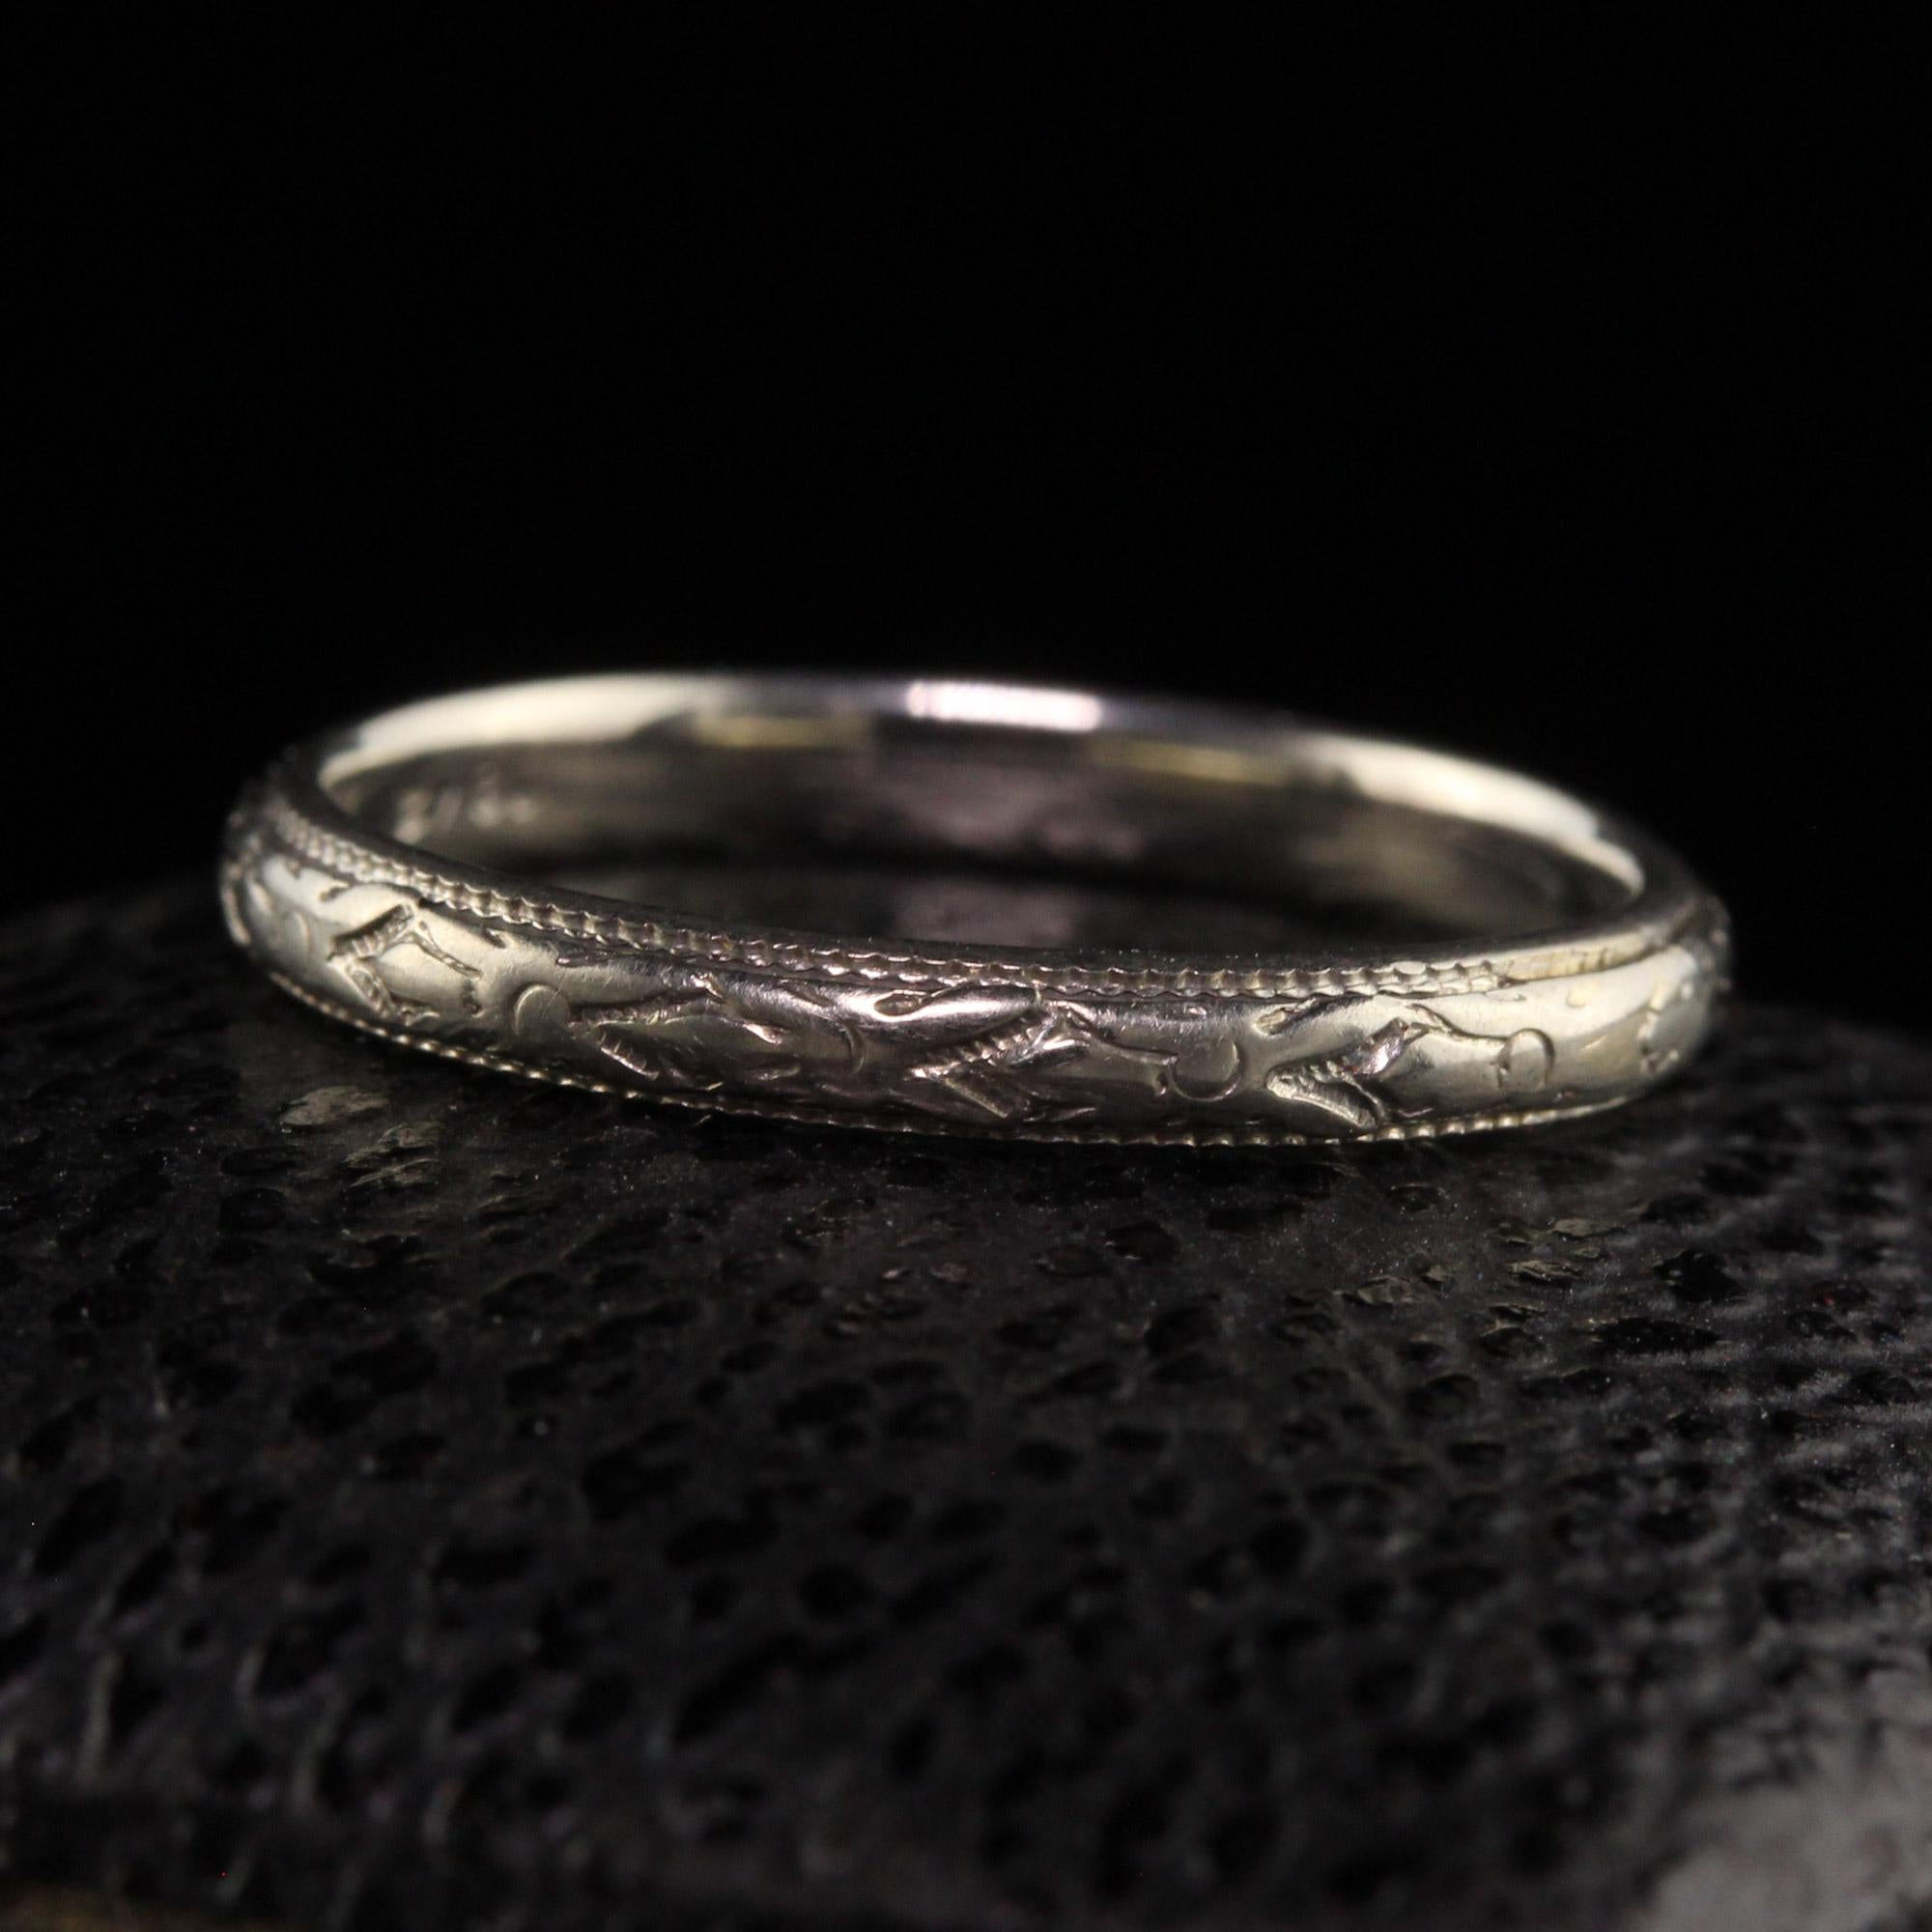 Schöne antike Art Deco 18K Weißgold graviert Hochzeit Band - Größe 5. Diese schöne Hochzeit Band ist in 18k Weißgold gefertigt. Der Ring ist schön um den gesamten Ring graviert und ist in einem sehr guten Zustand.

Artikel #R1472

Metall: 18K